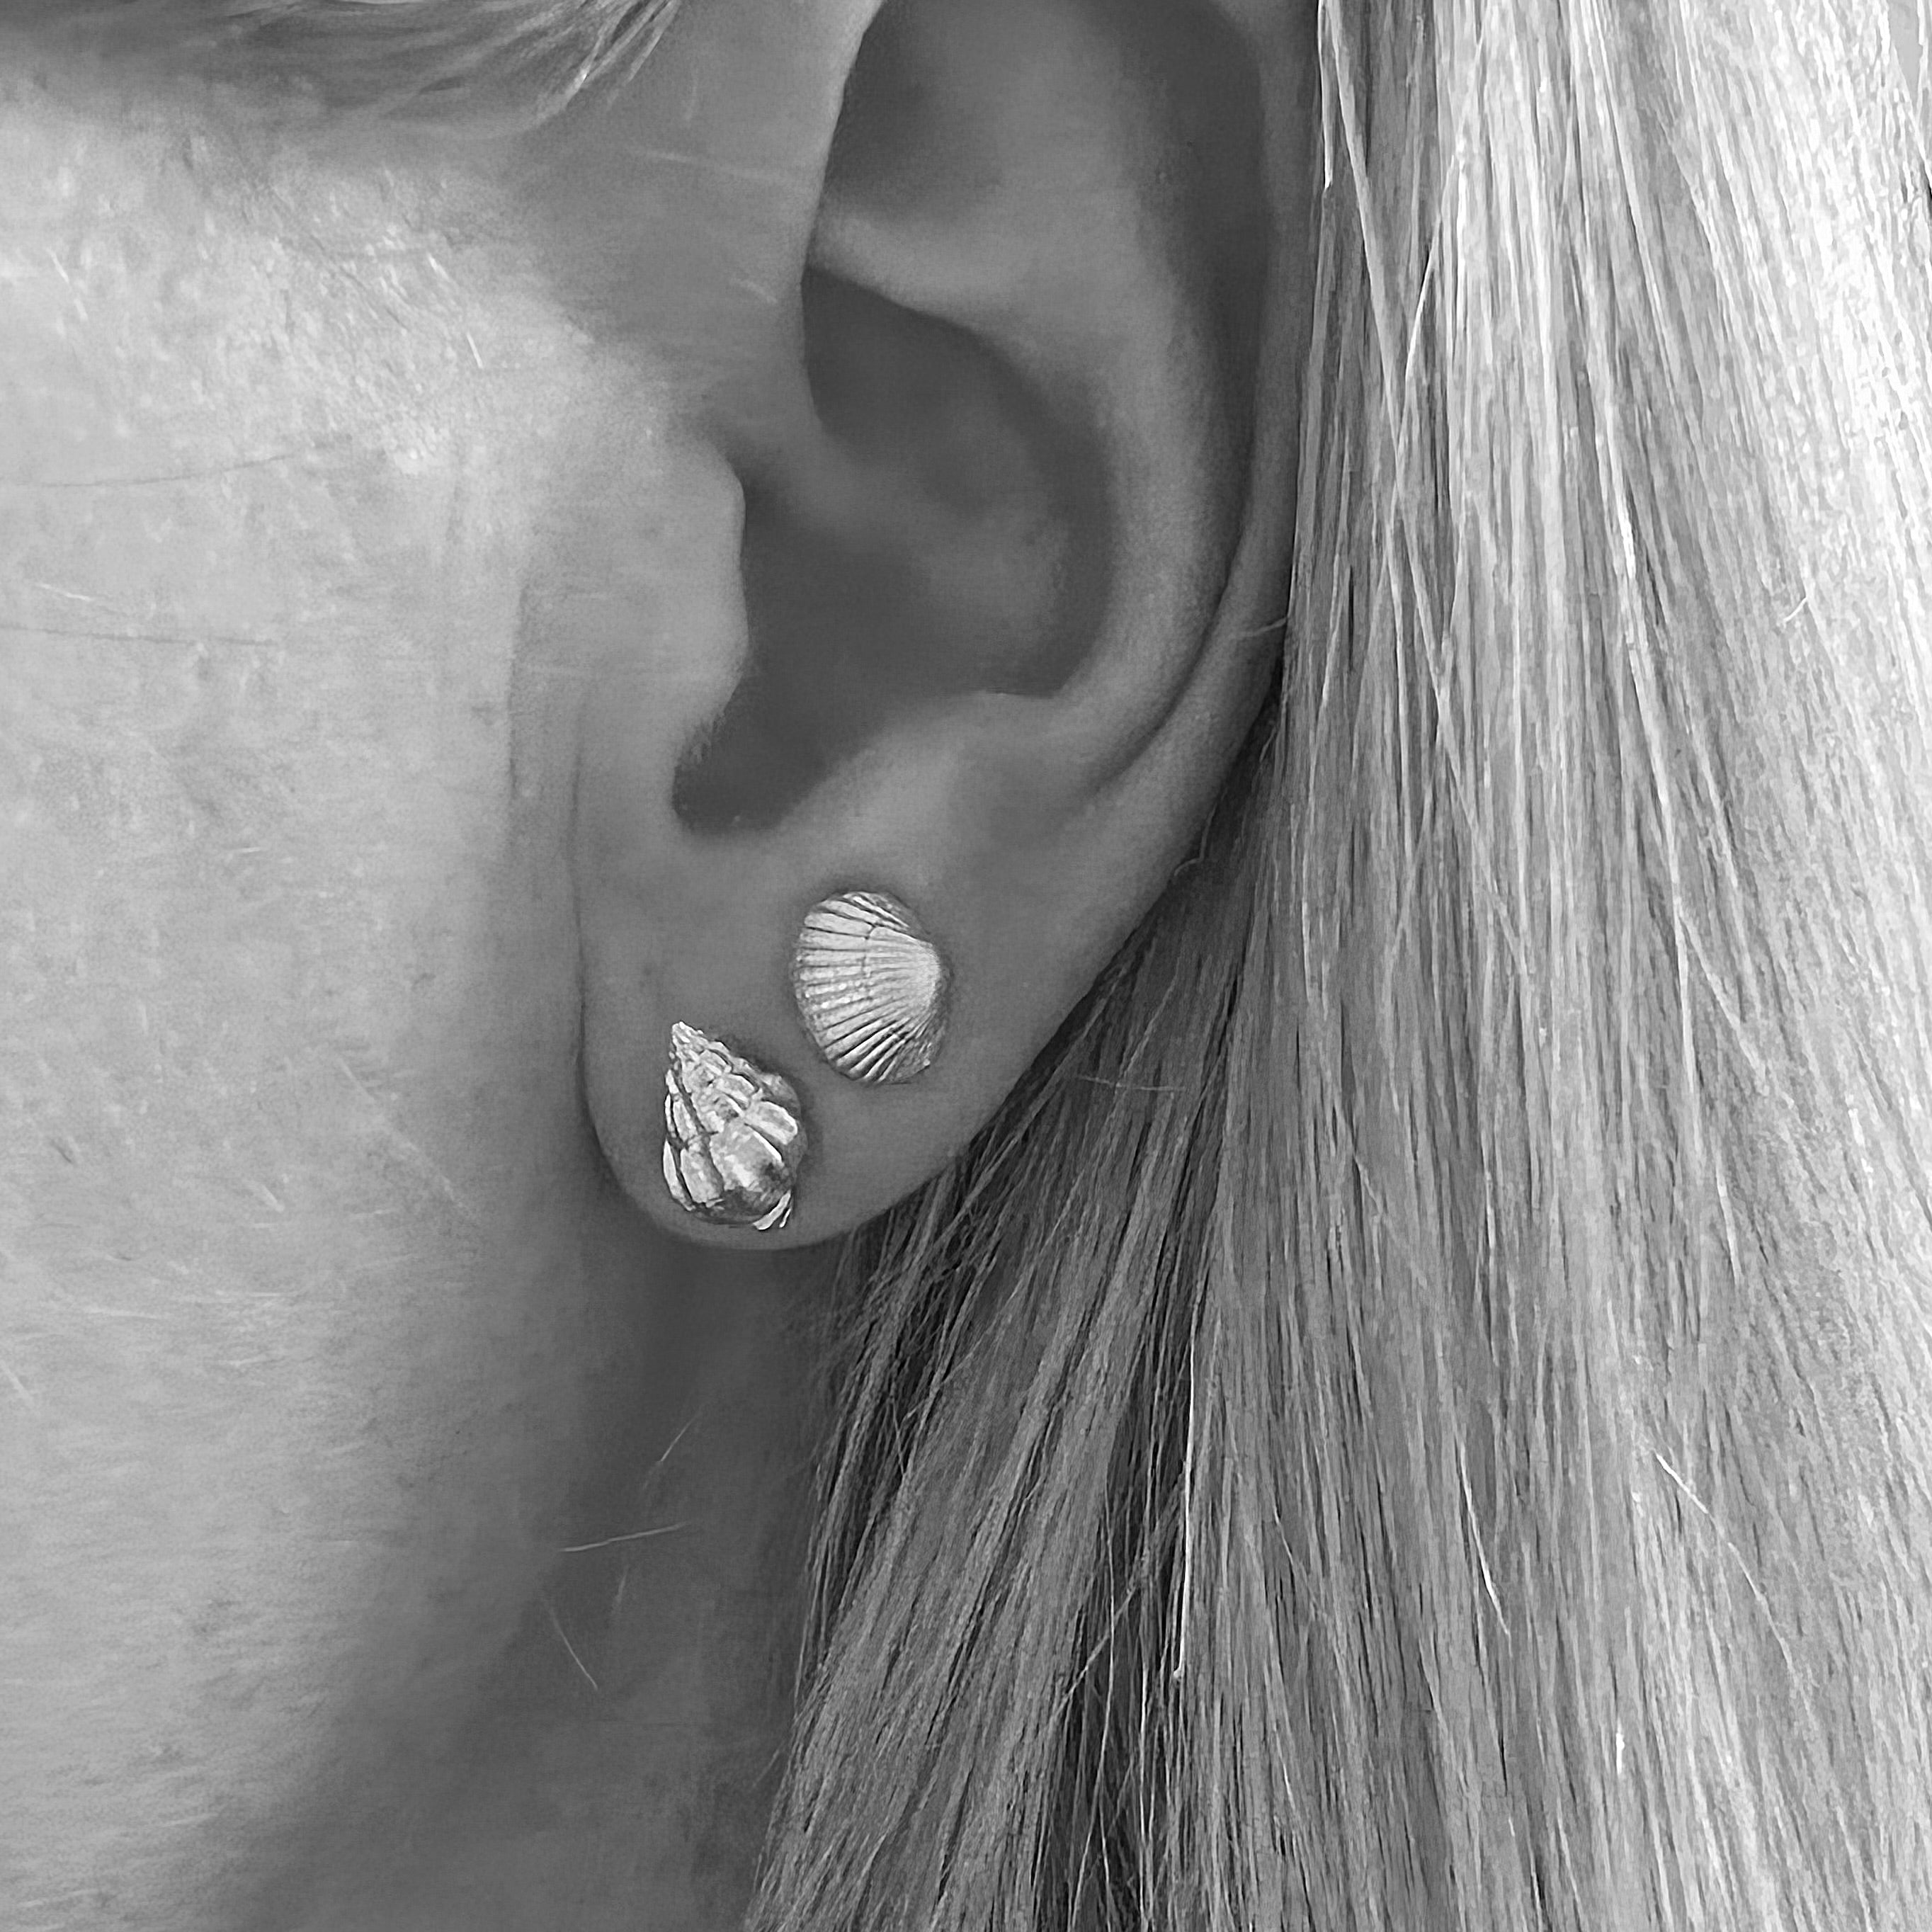 Andrea single earring